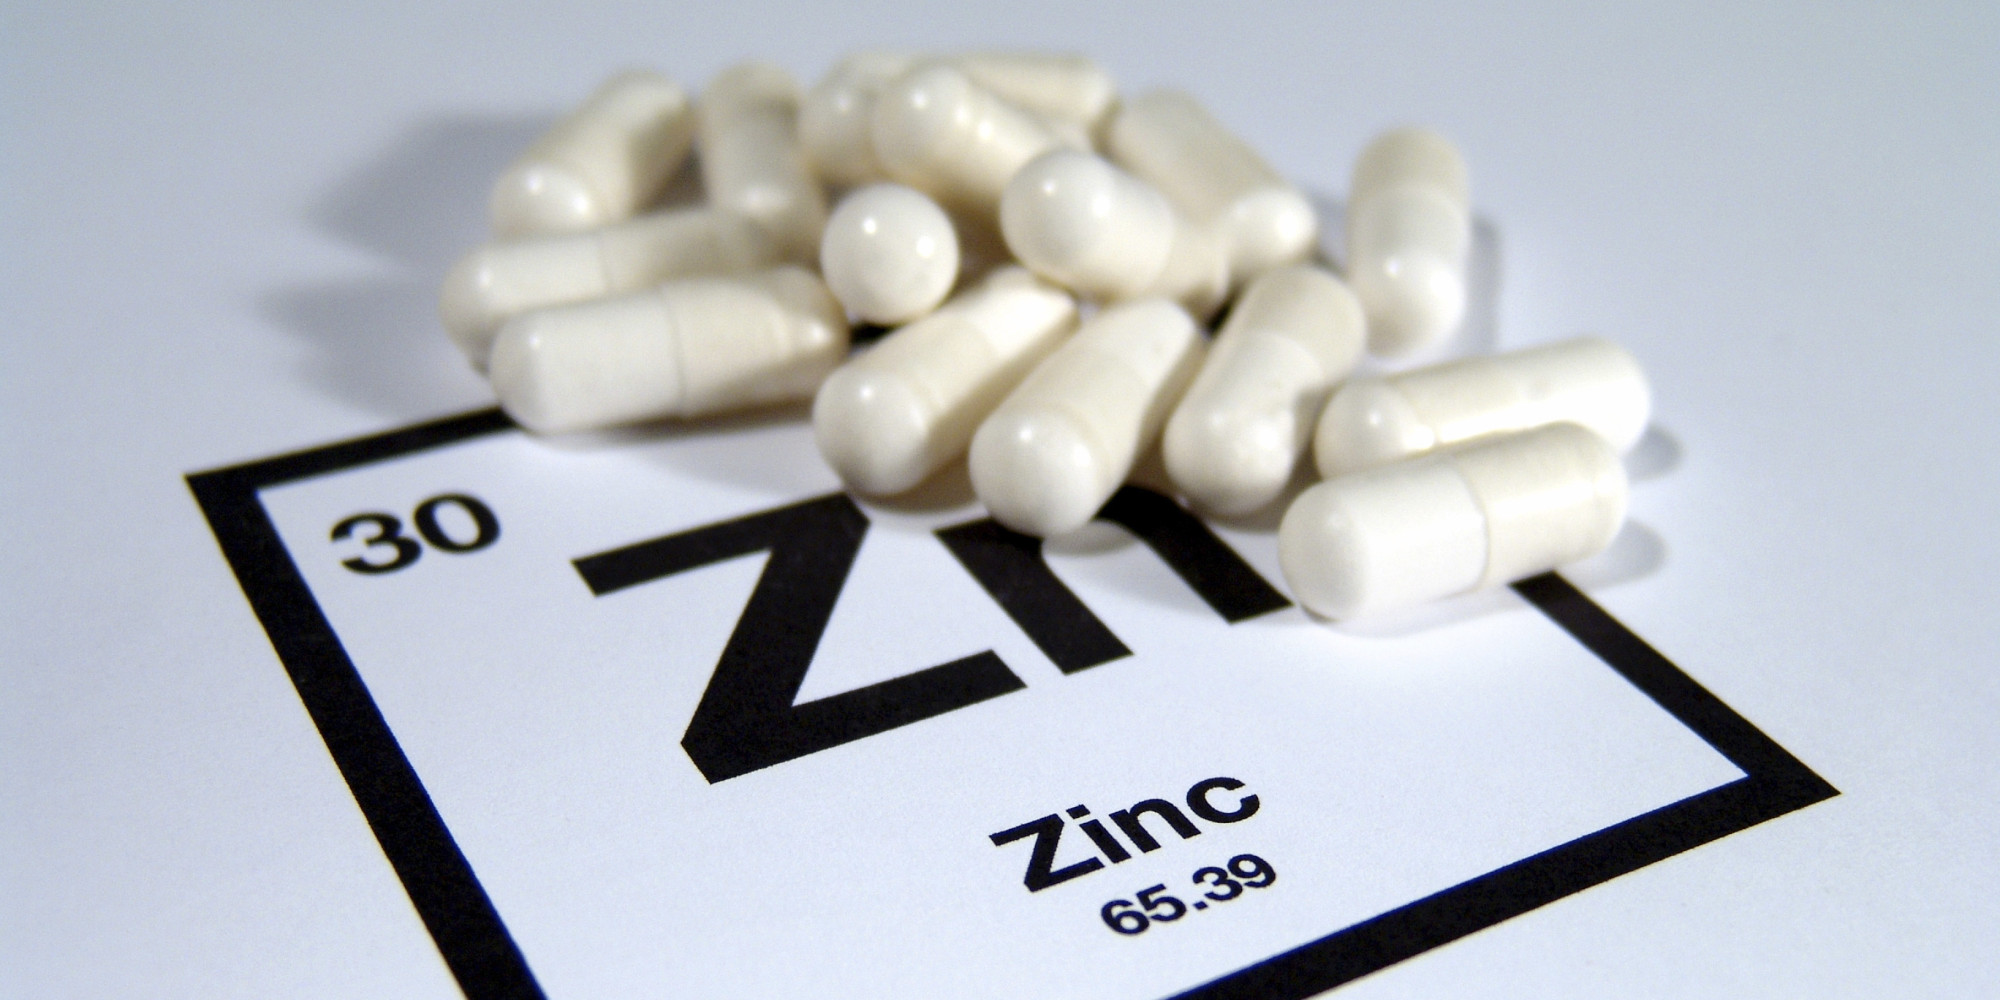 Le zinc: Un allié pour l'homme